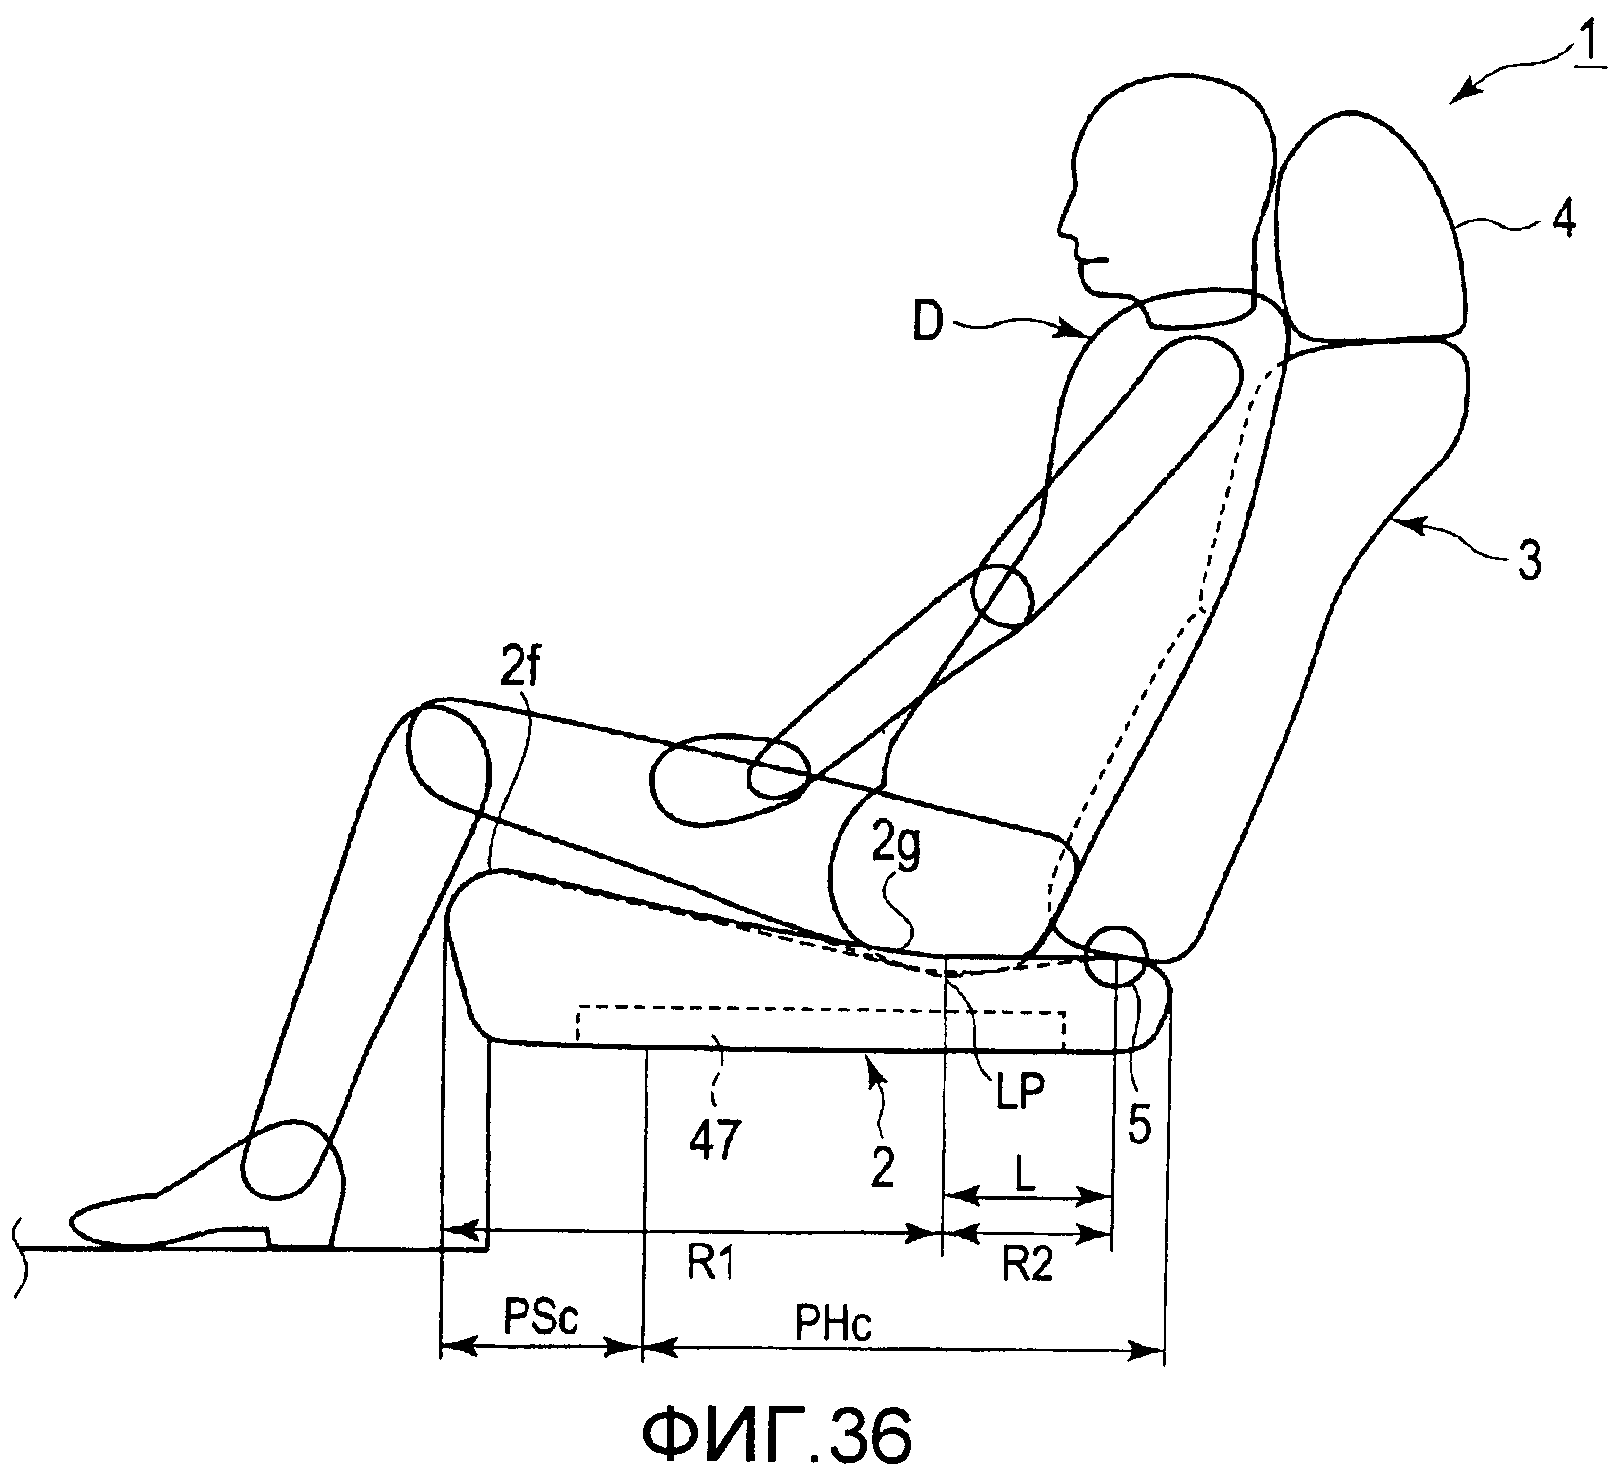 градус наклона спинки стула